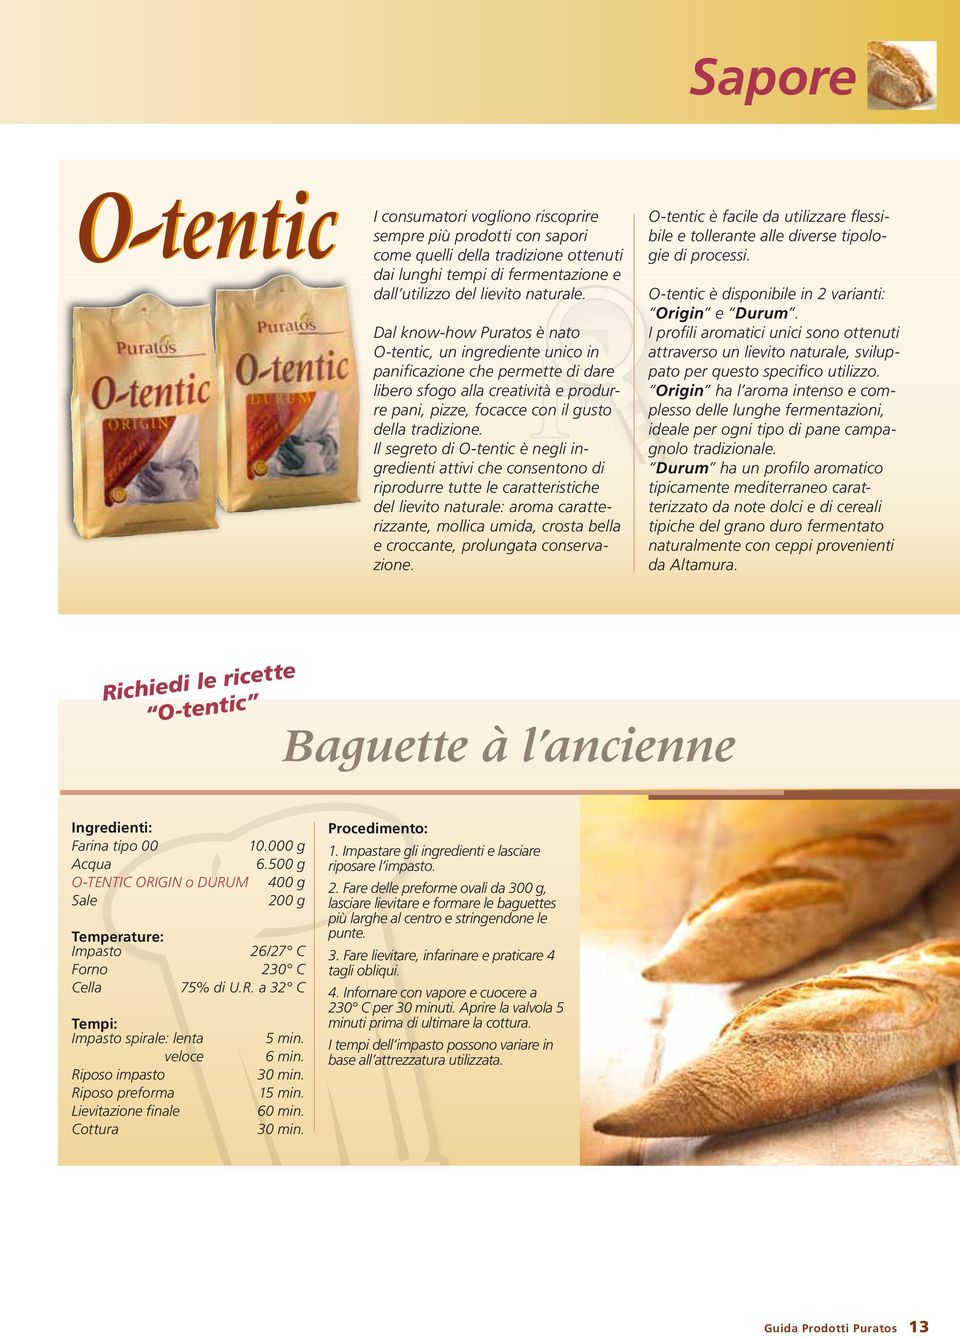 Il segreto di O-tentic è negli ingredienti attivi che consentono di riprodurre tutte le caratteristiche del lievito naturale: aroma caratterizzante, mollica umida, crosta bella e croccante,